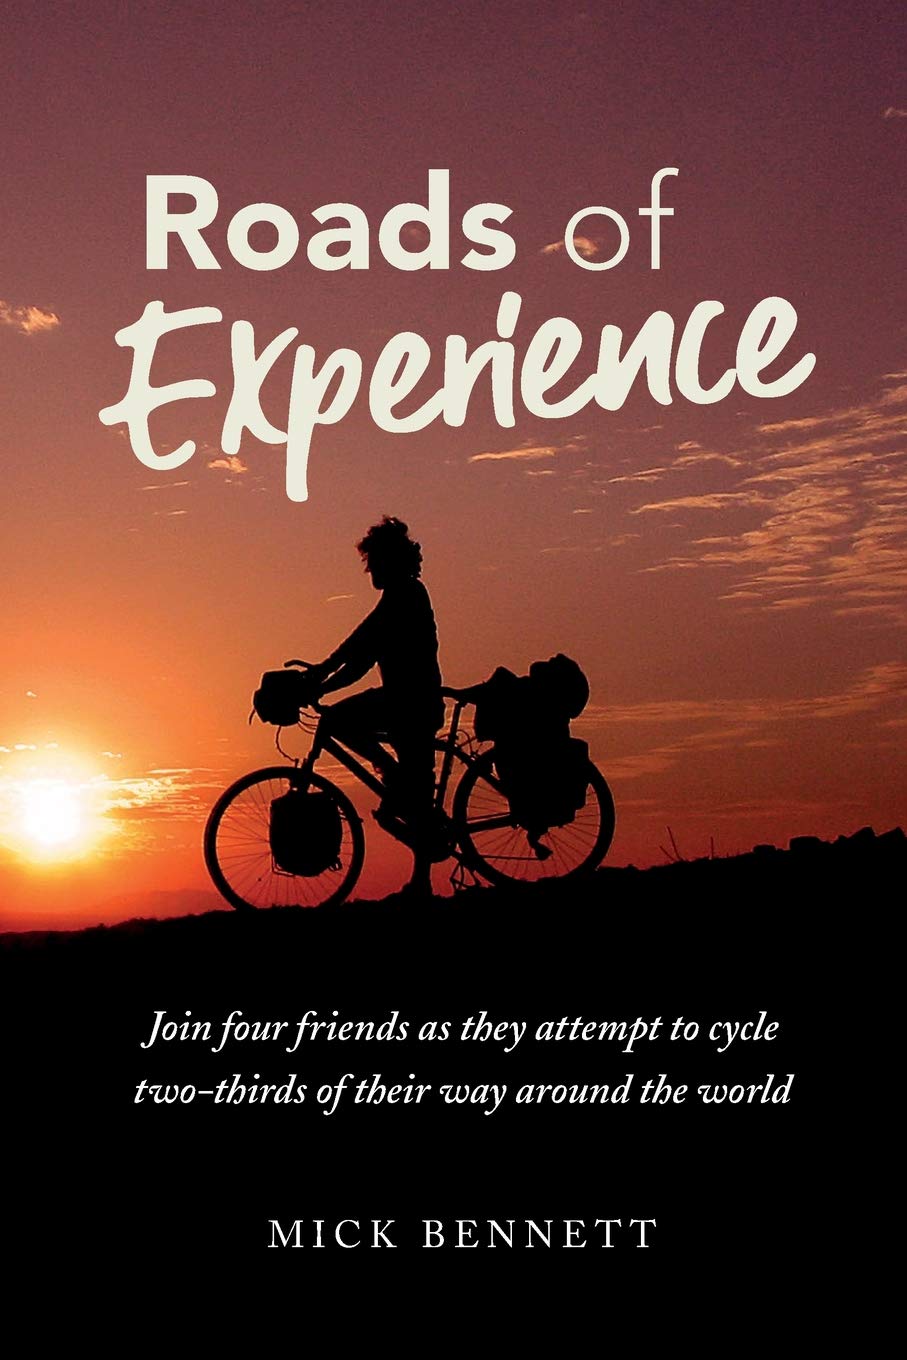 Roads of Experience - Mick Bennett | Adventure Books | NZ